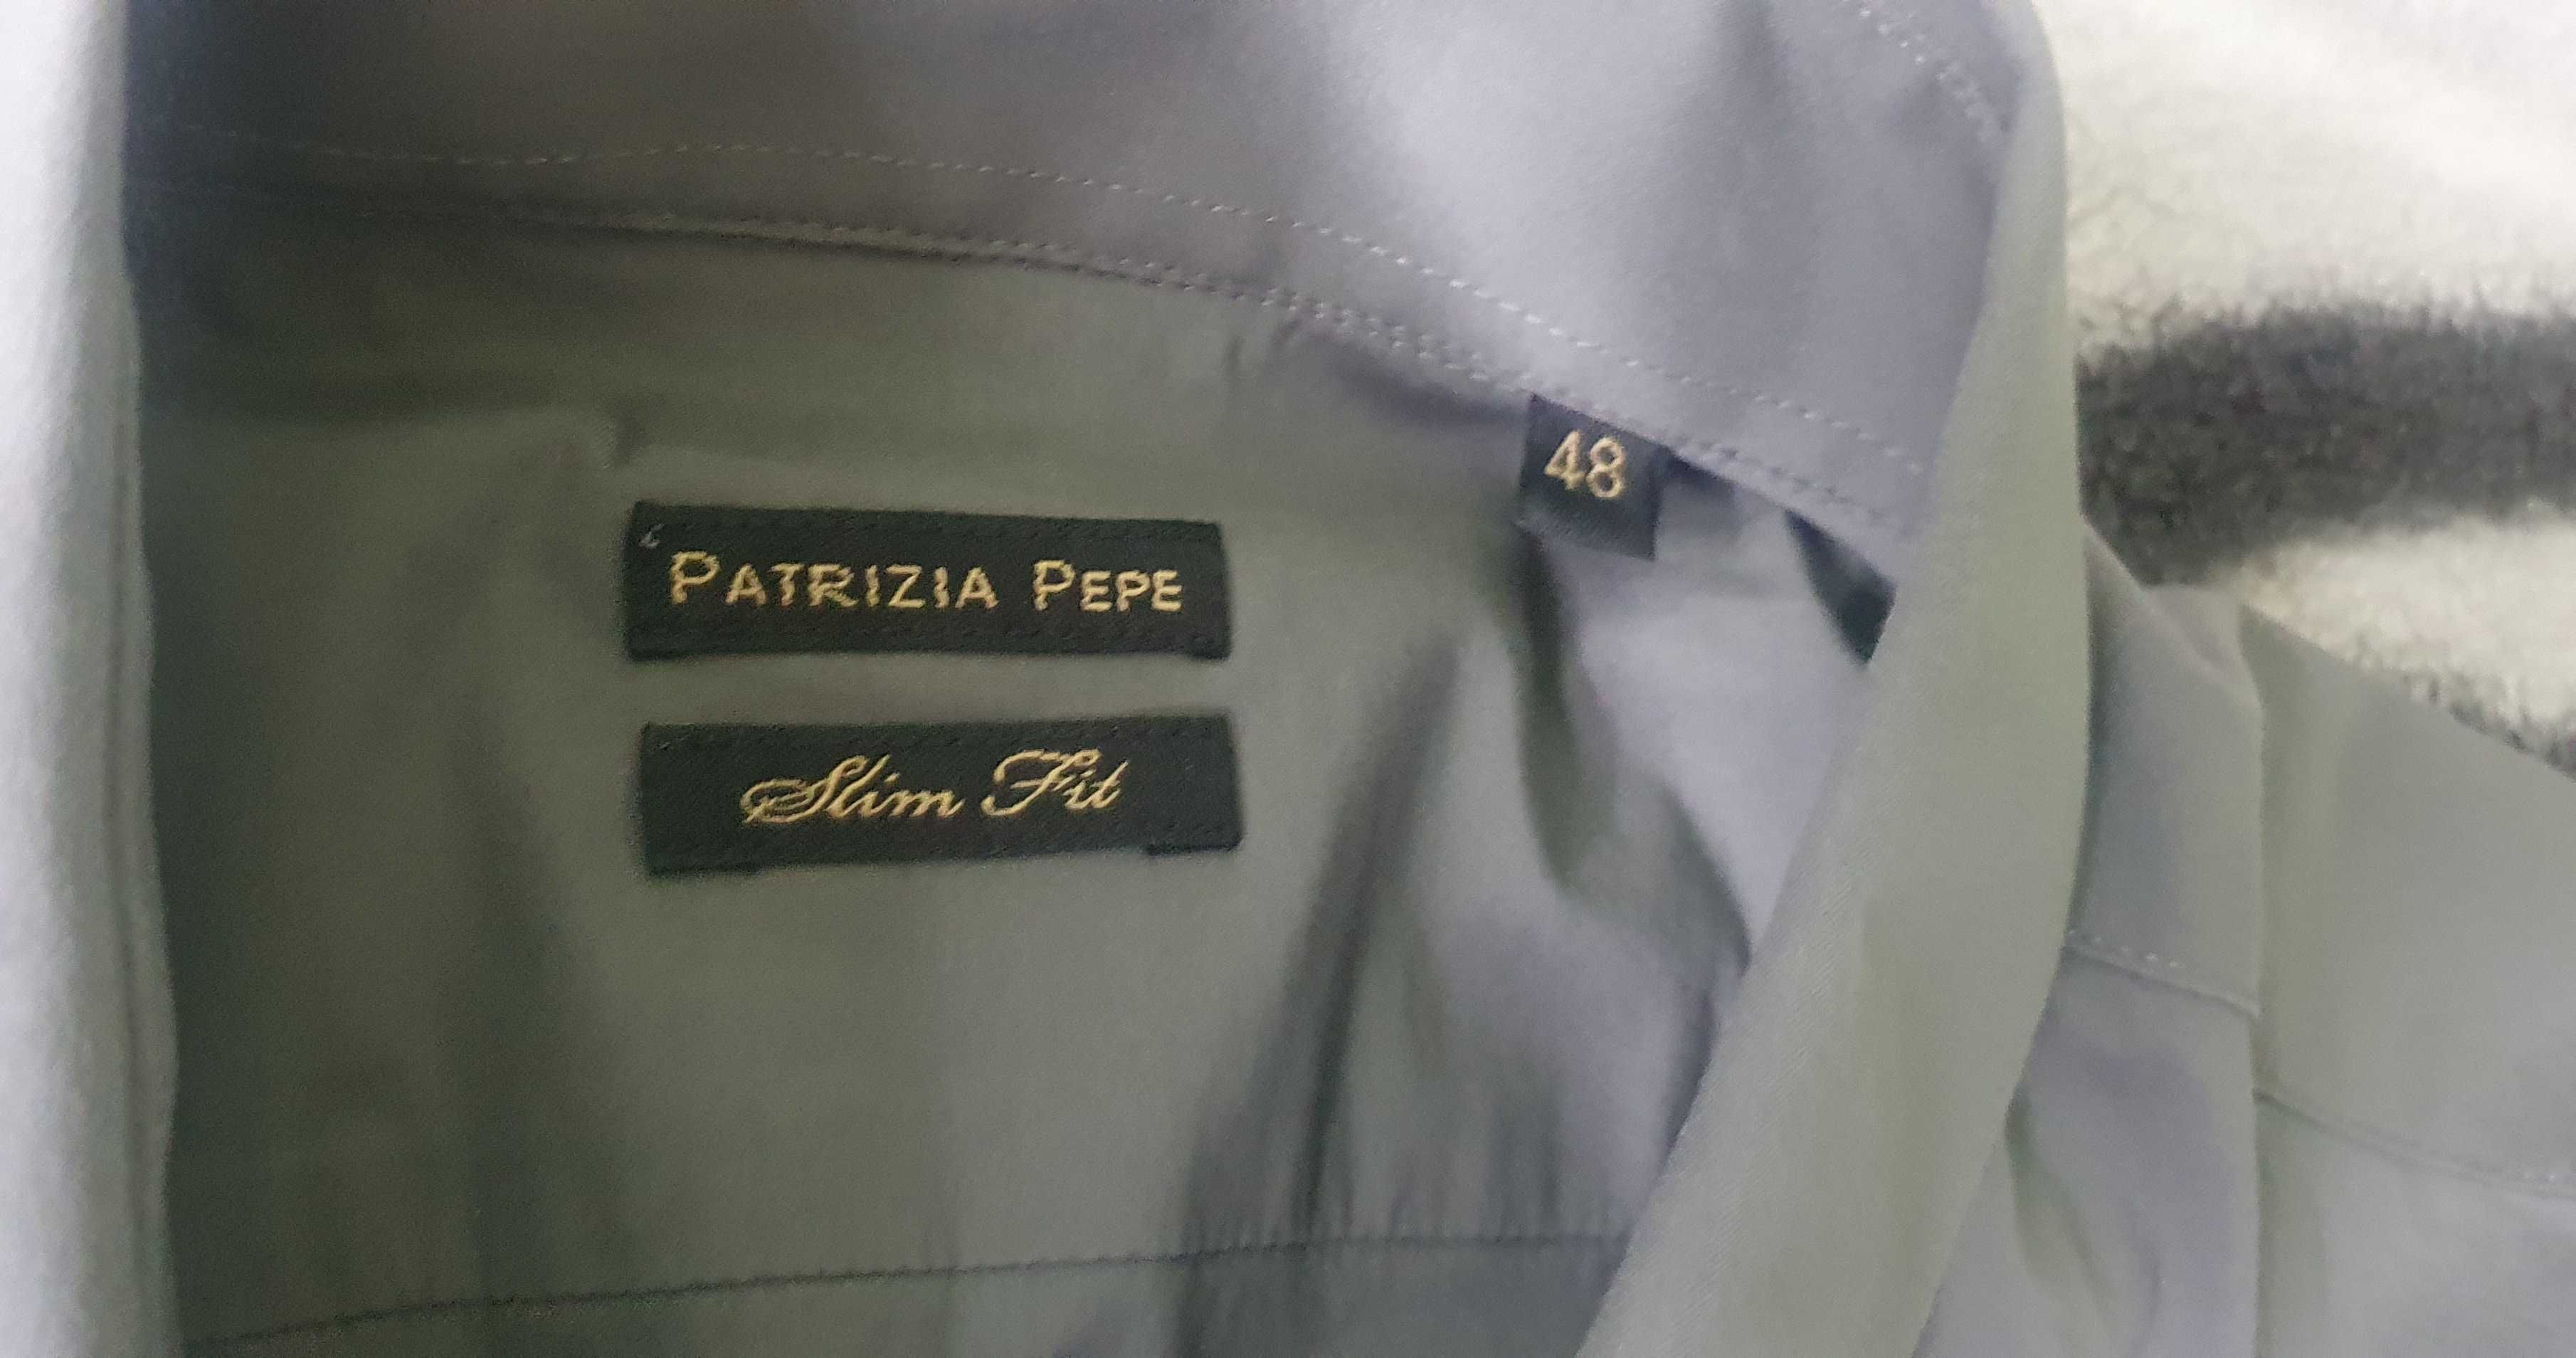 Patrizia Pepe koszula męska szara slim fit 48